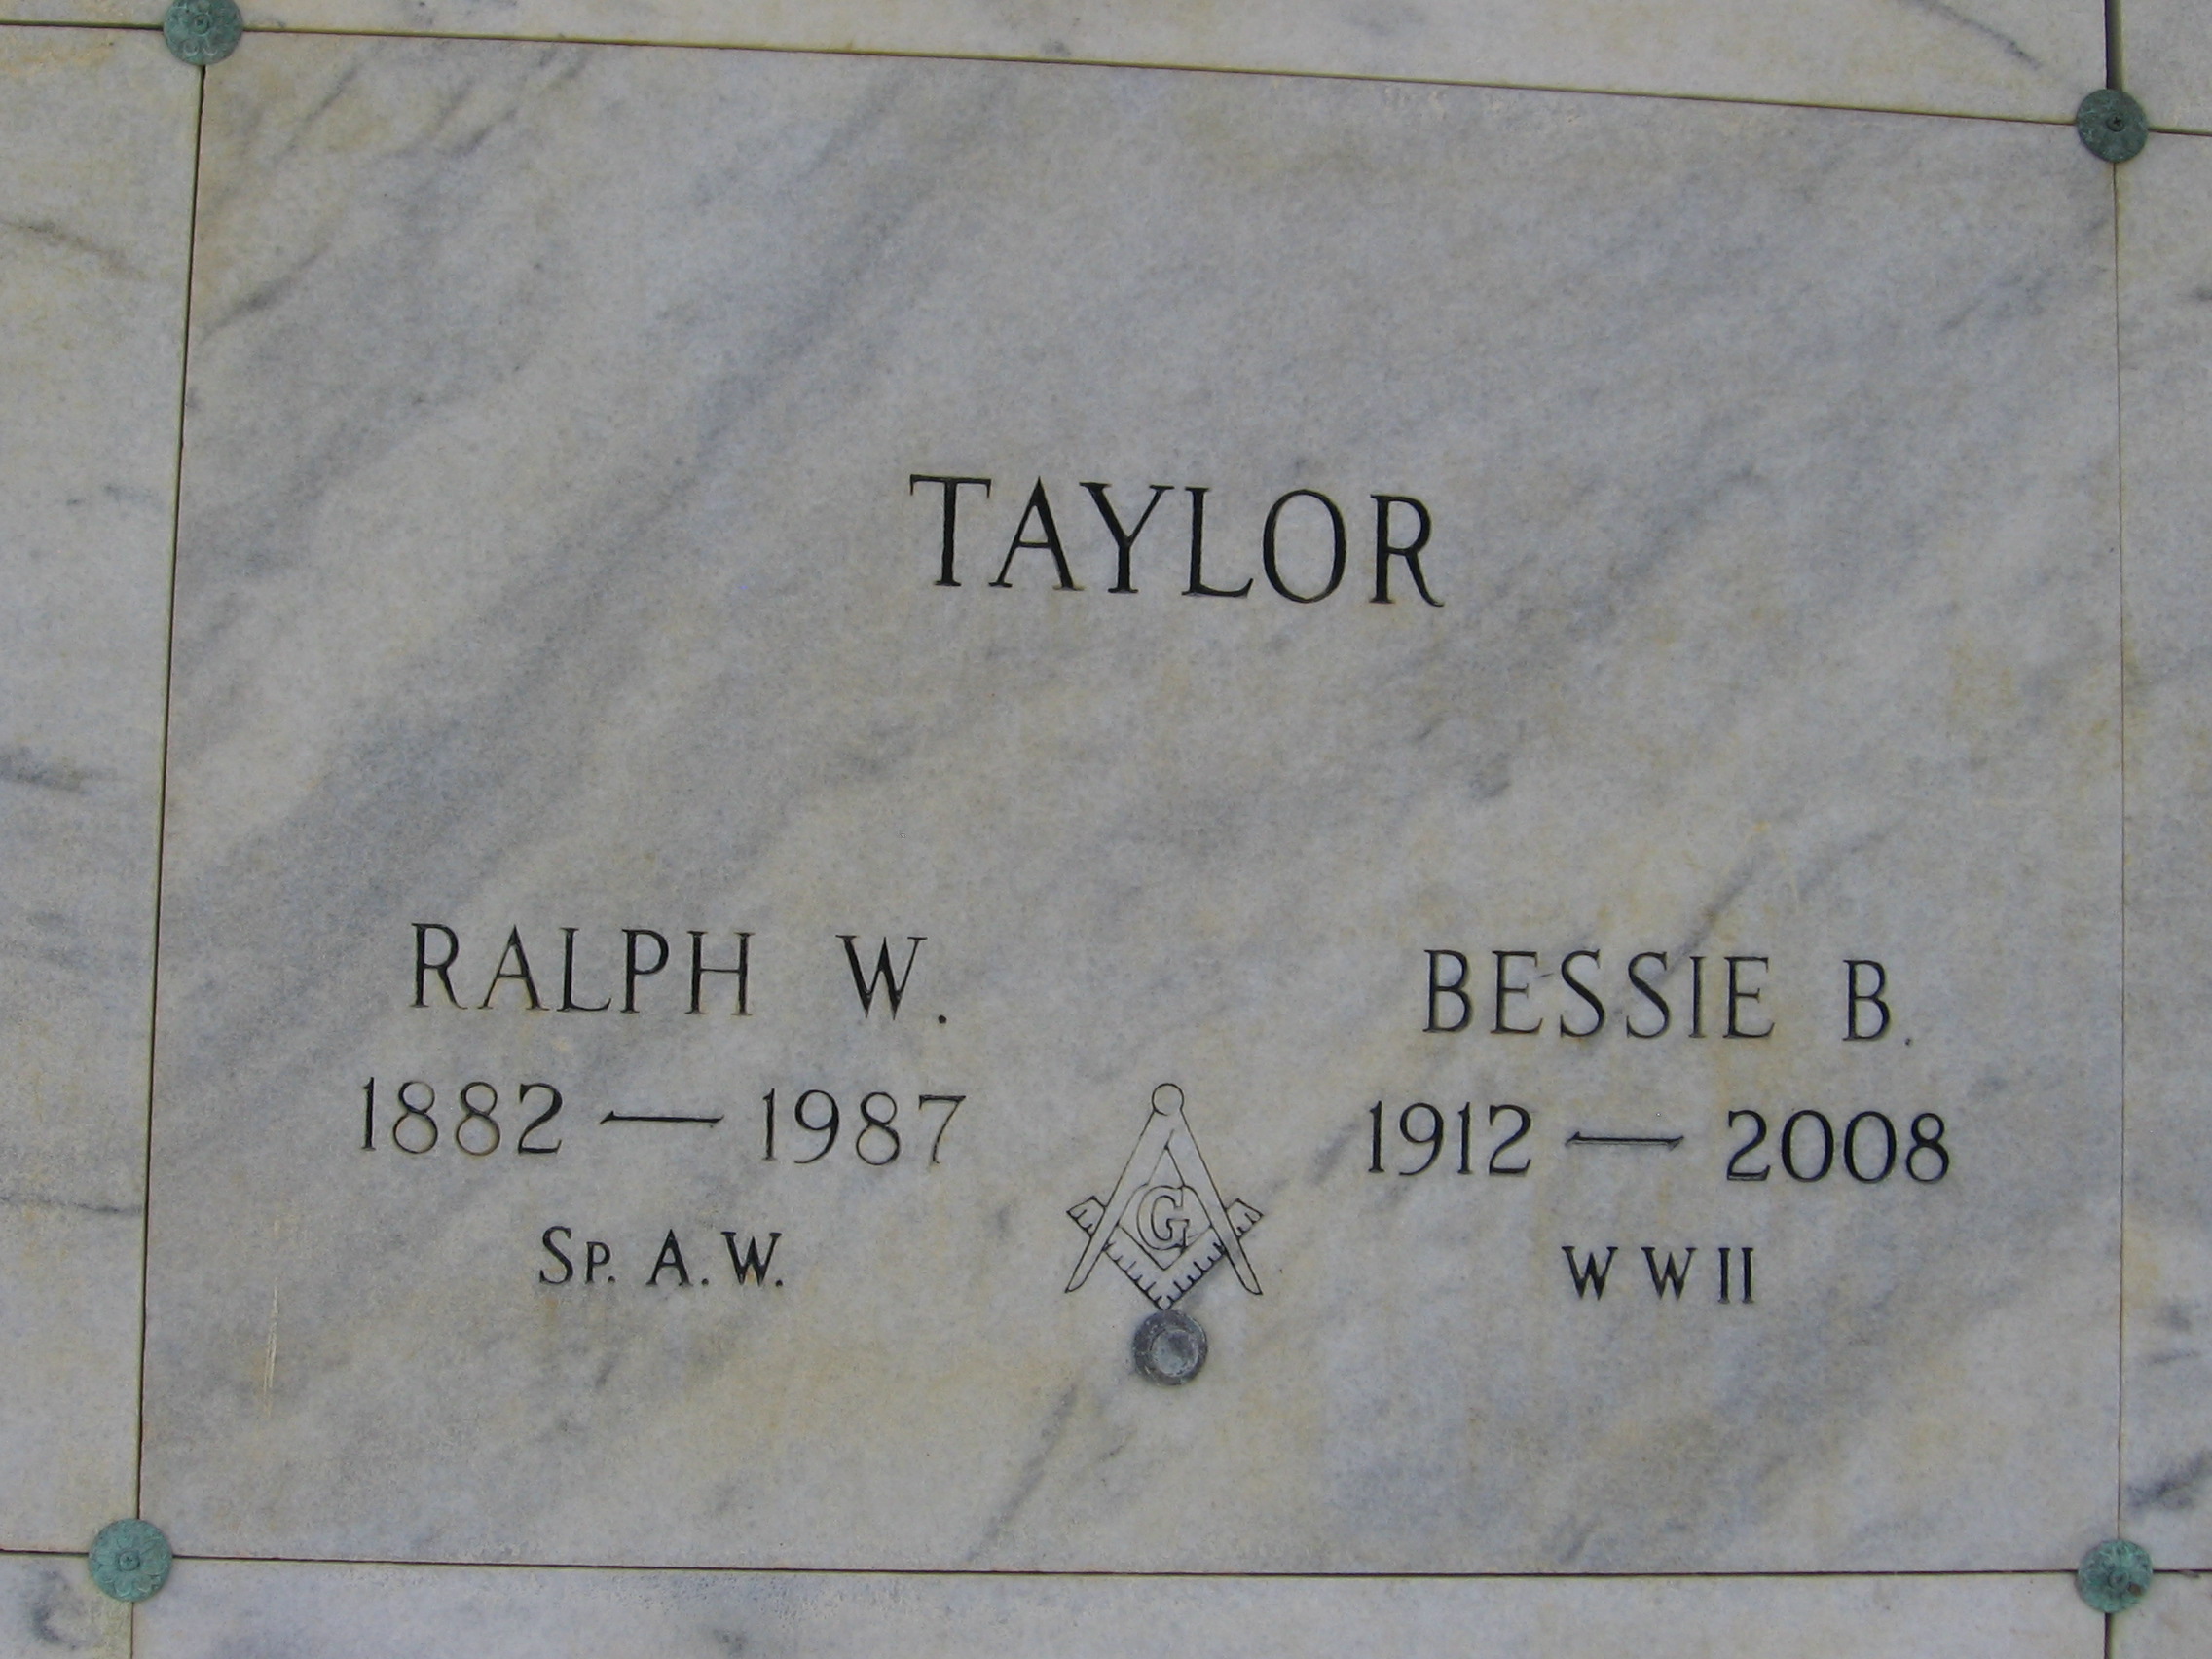 Bessie B Taylor